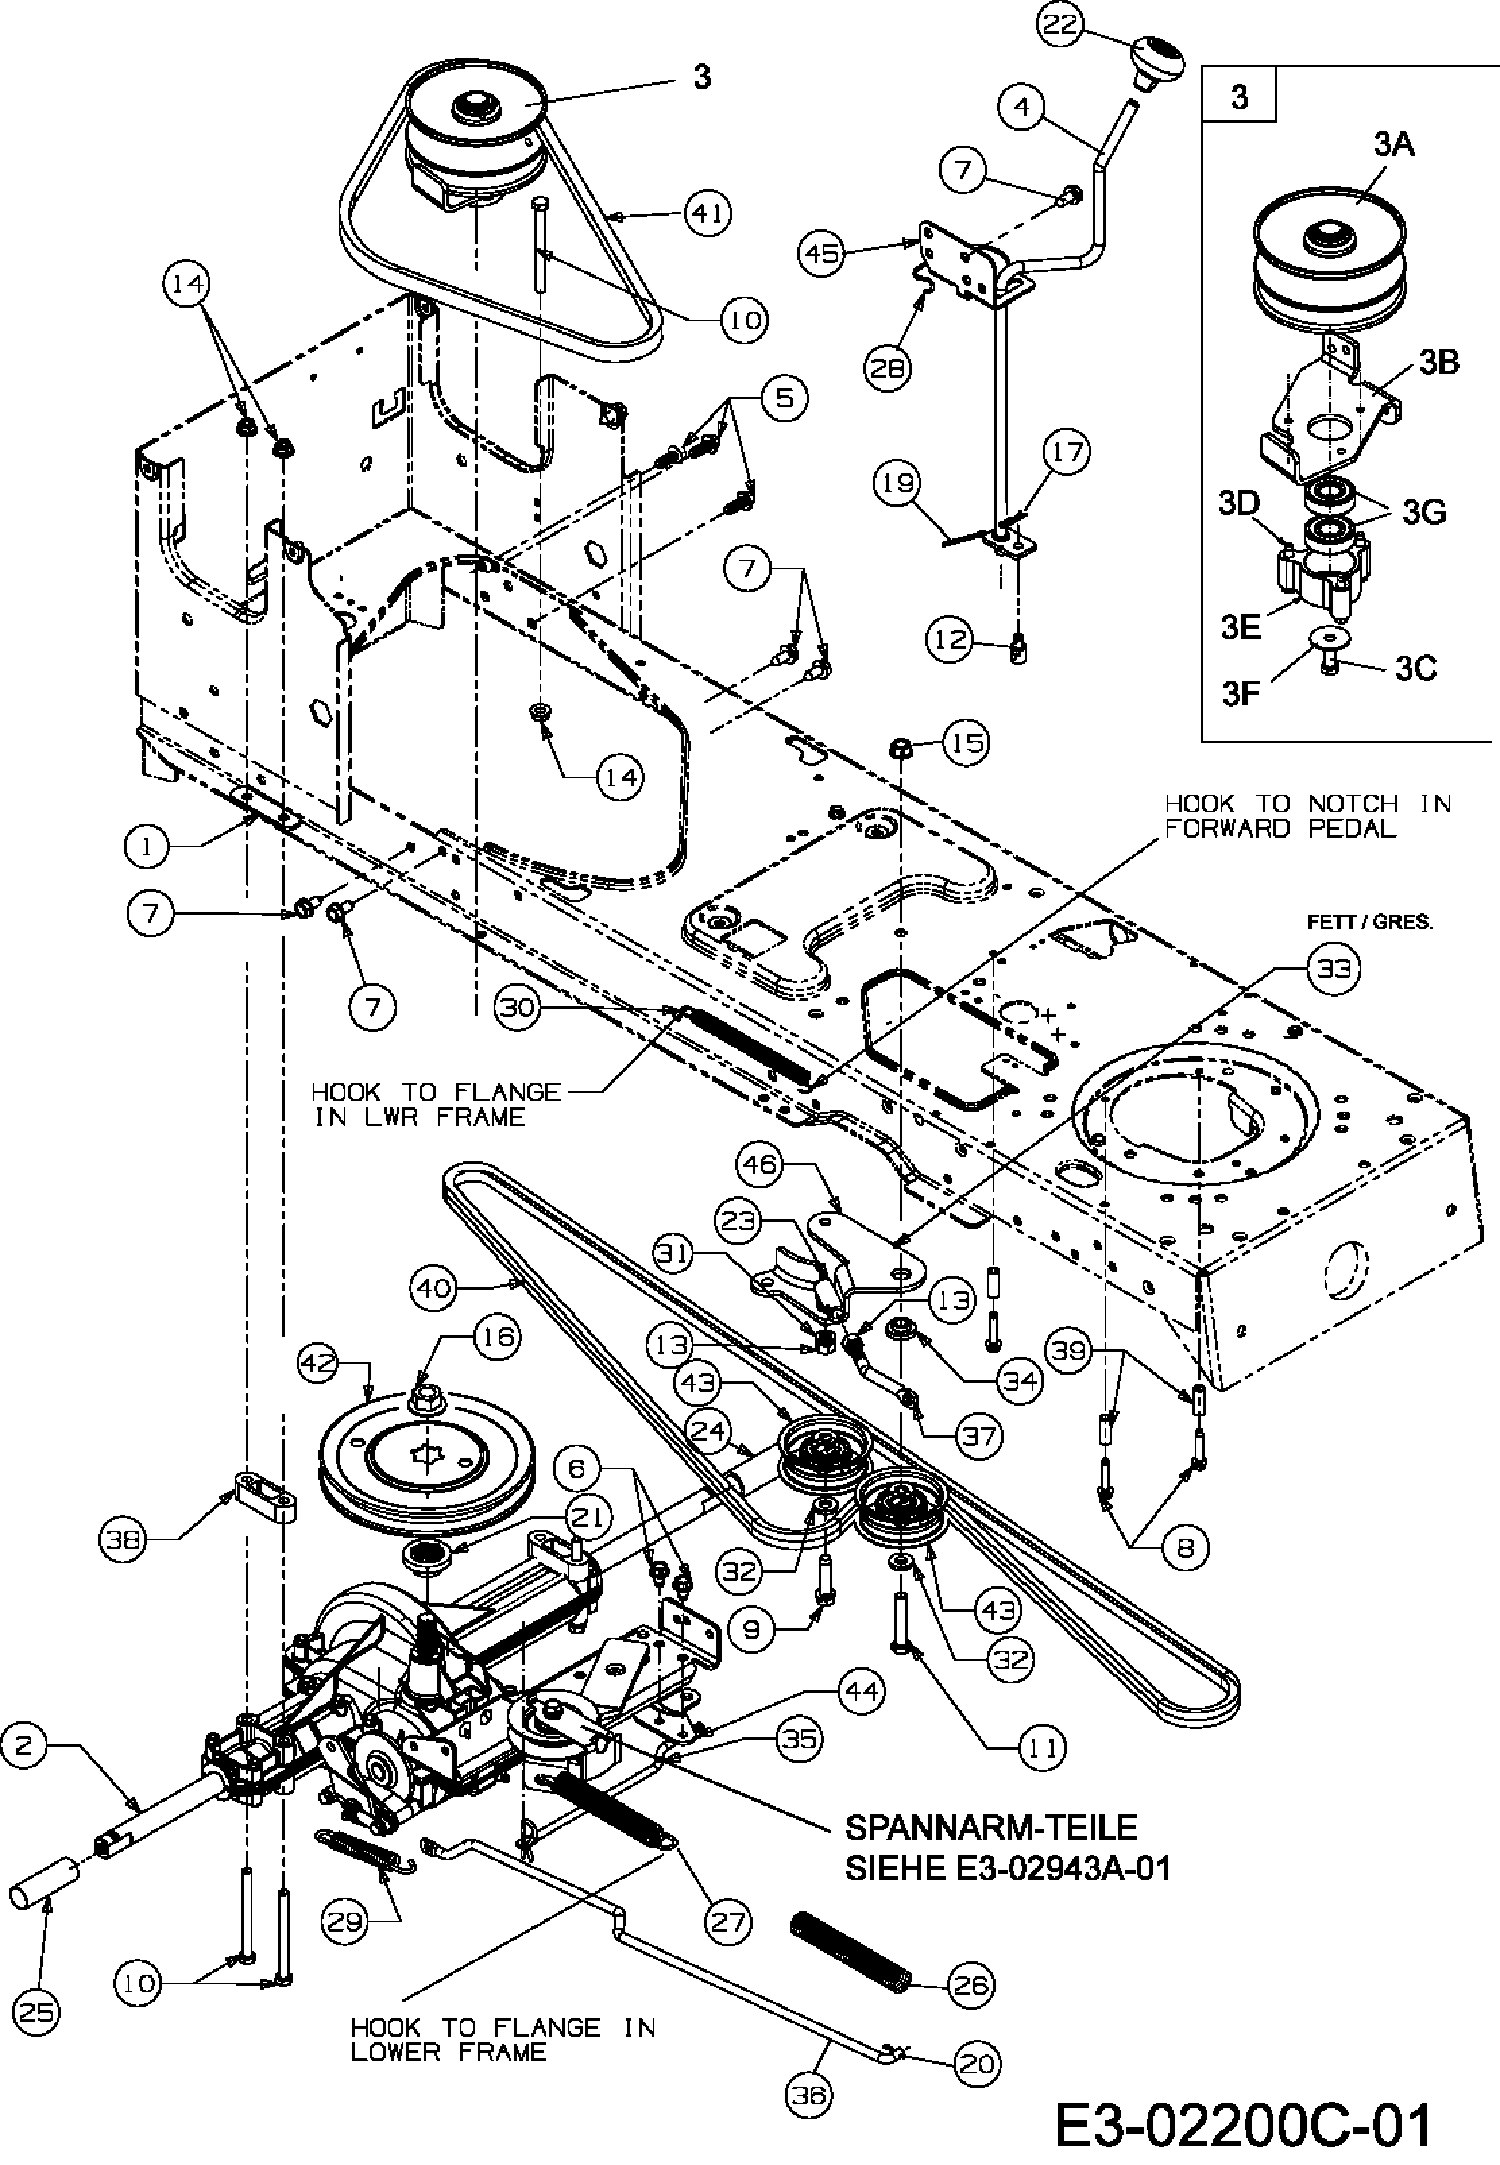 Keilriemen Fahrantrieb am Motor passend für Gutbrod SC Edition 13A-334-690 Rasen 